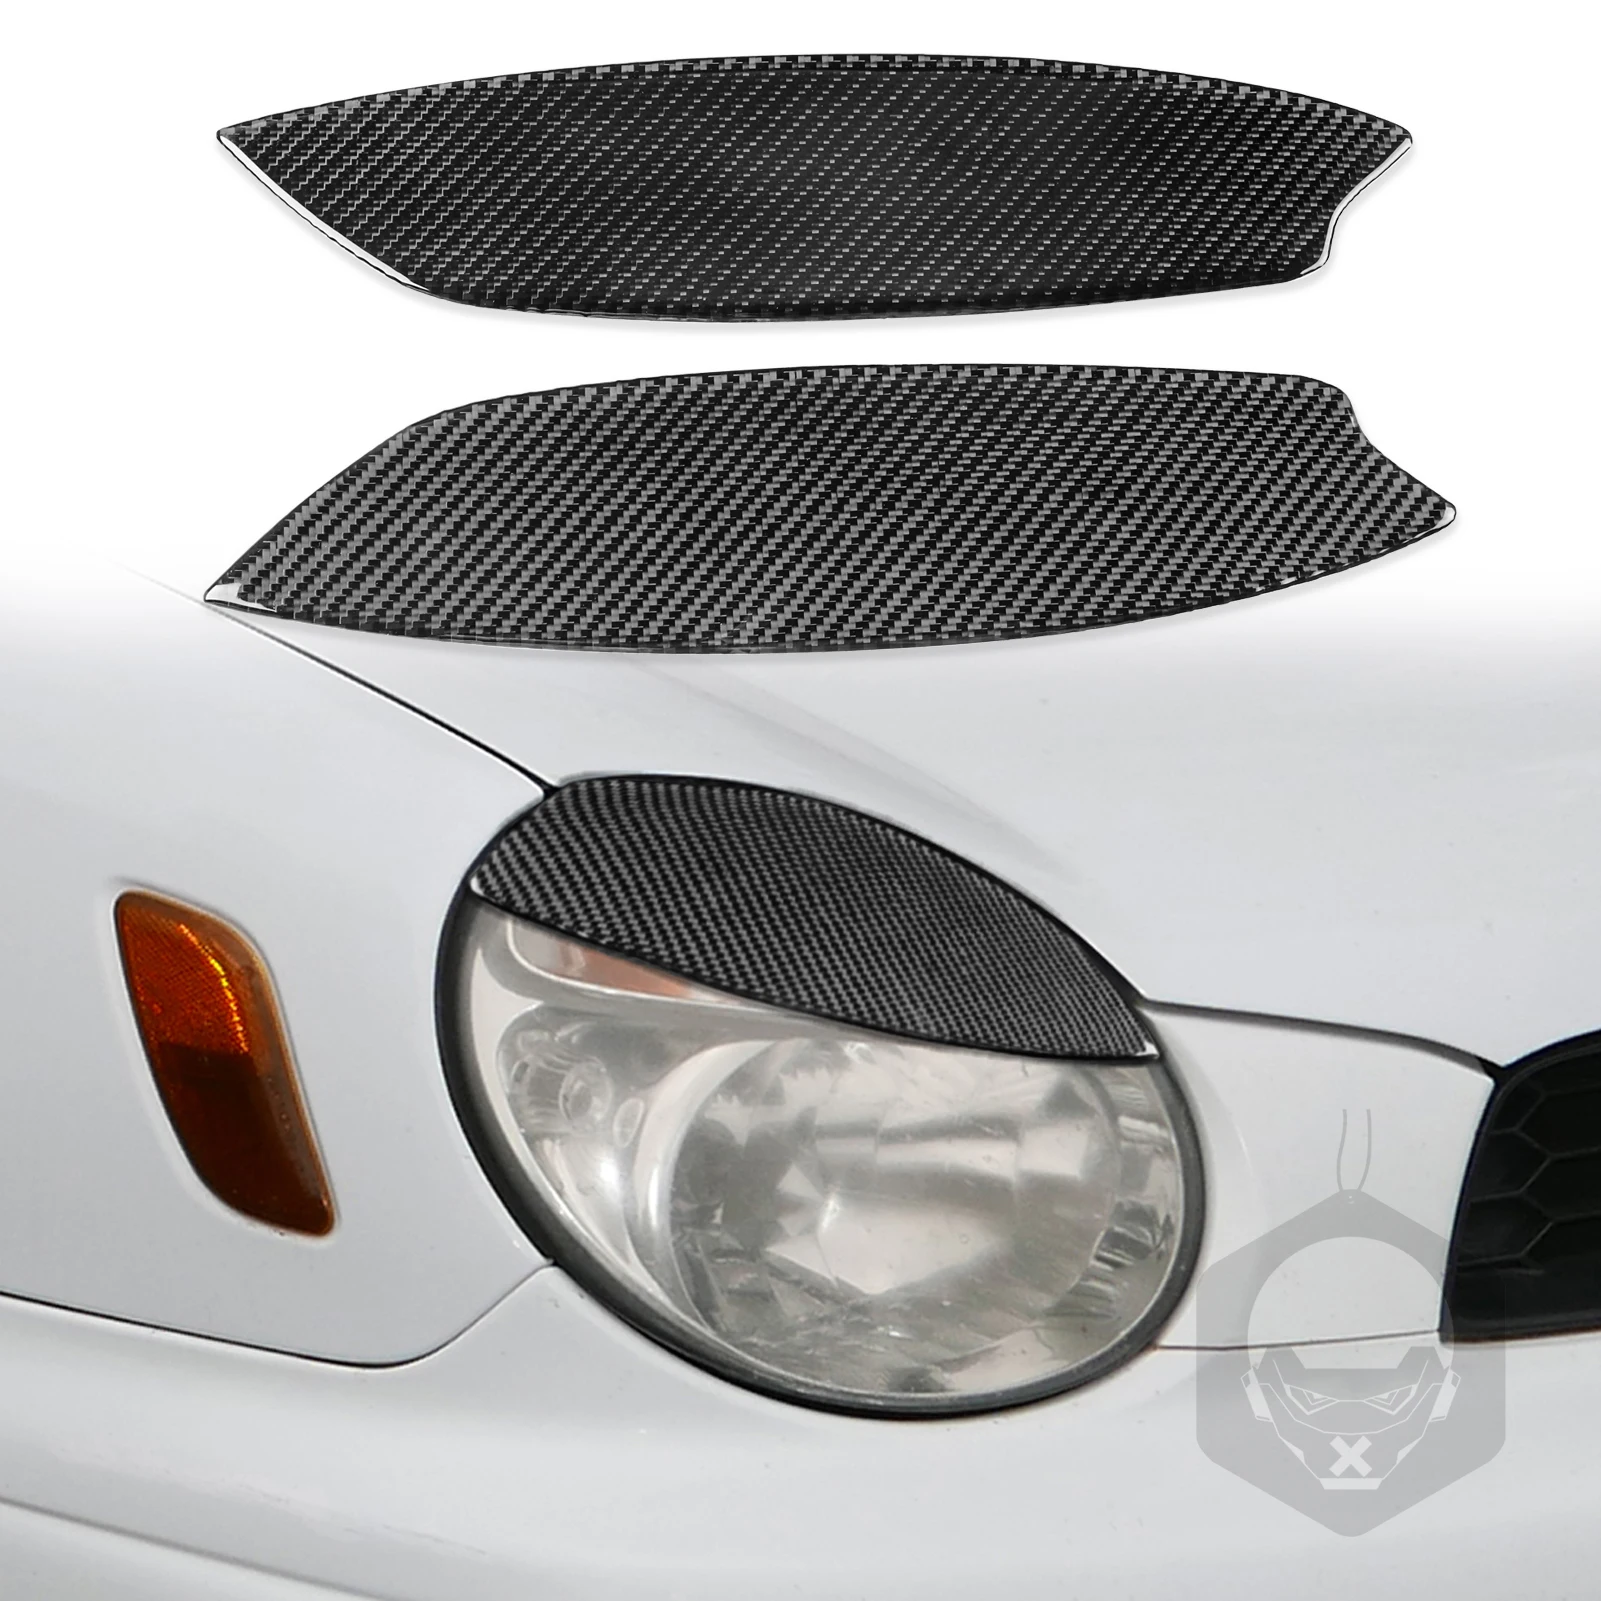 

2Pcs Carbon Fiber Car Headlights Eyebrow Eyelids Trim Cover For Subaru Impreza WRX STI 2002-2003 Car Stickers Eyelids Trim Cover